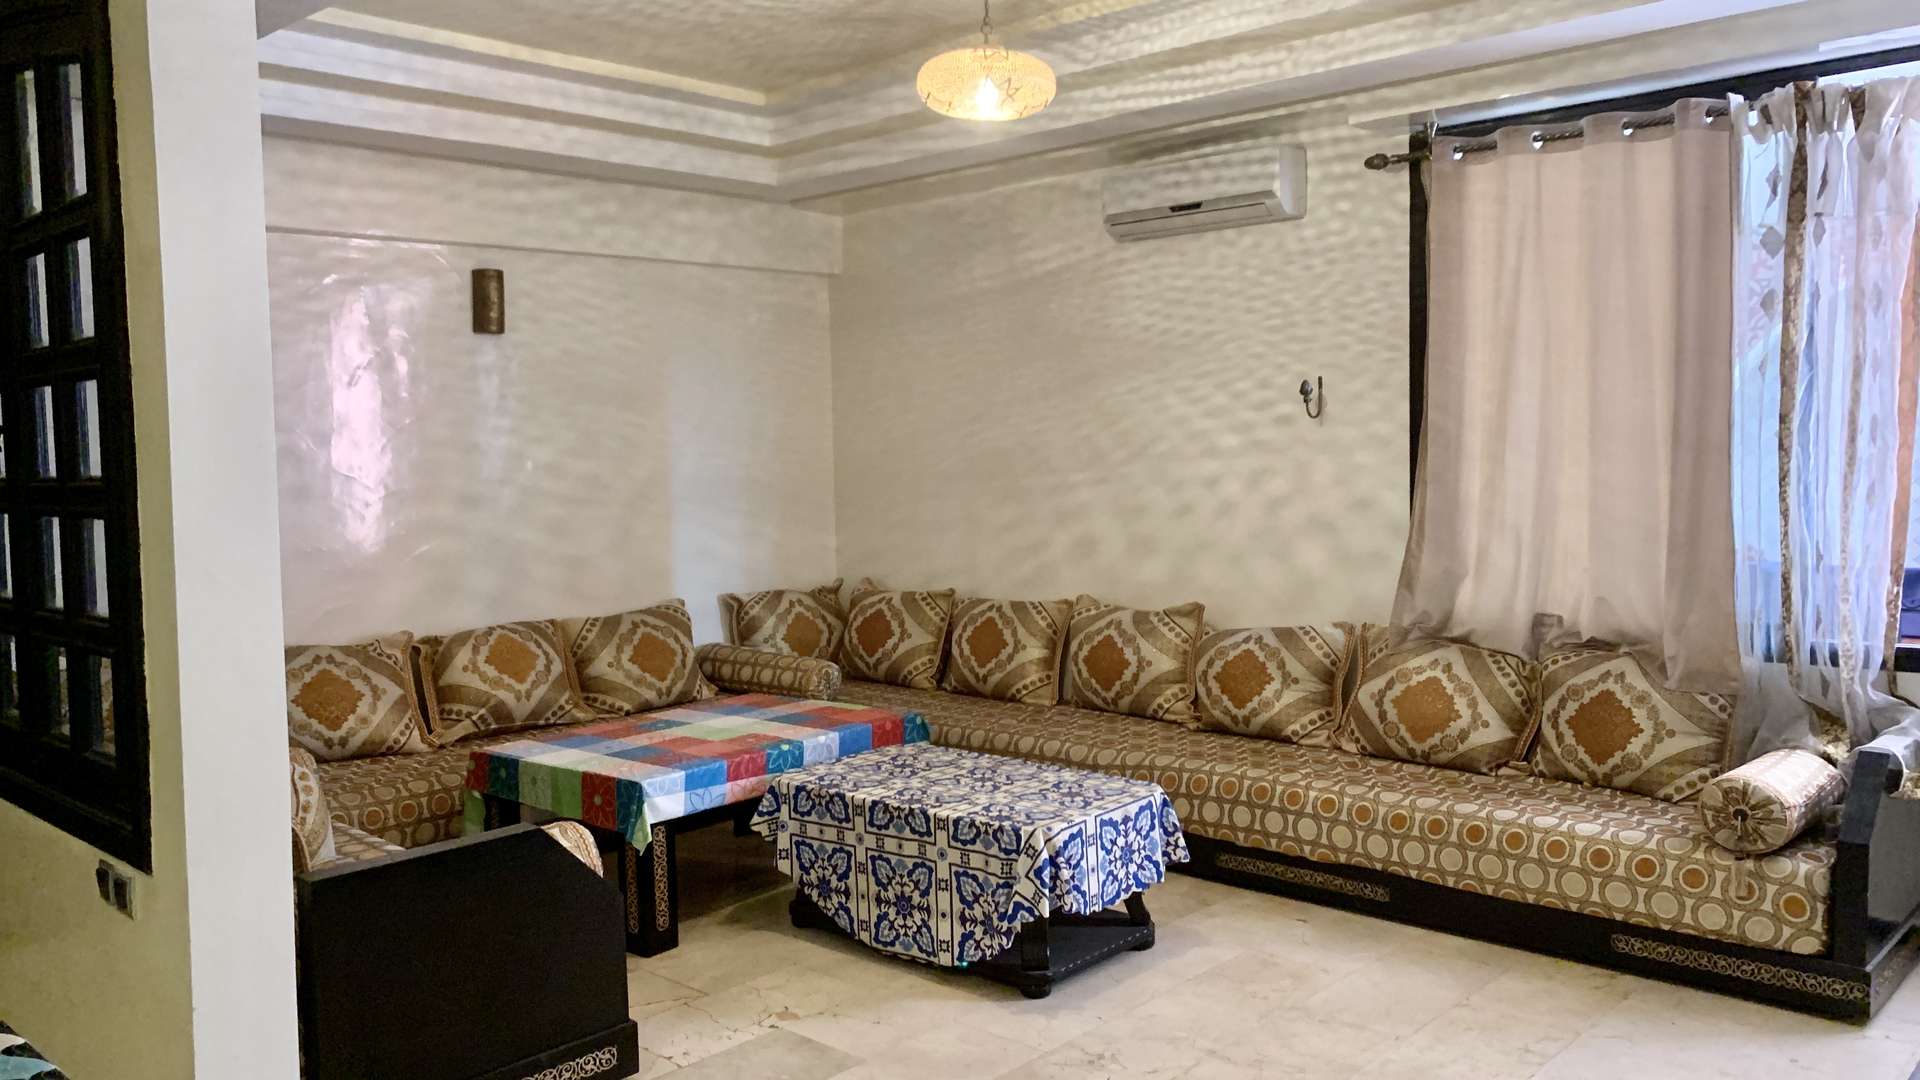 Vente,Appartement,Appartement à l'achat à Guéliz. Surface de 112.0 m². Prestation de conciergerie, air conditionné,Marrakech,Guéliz